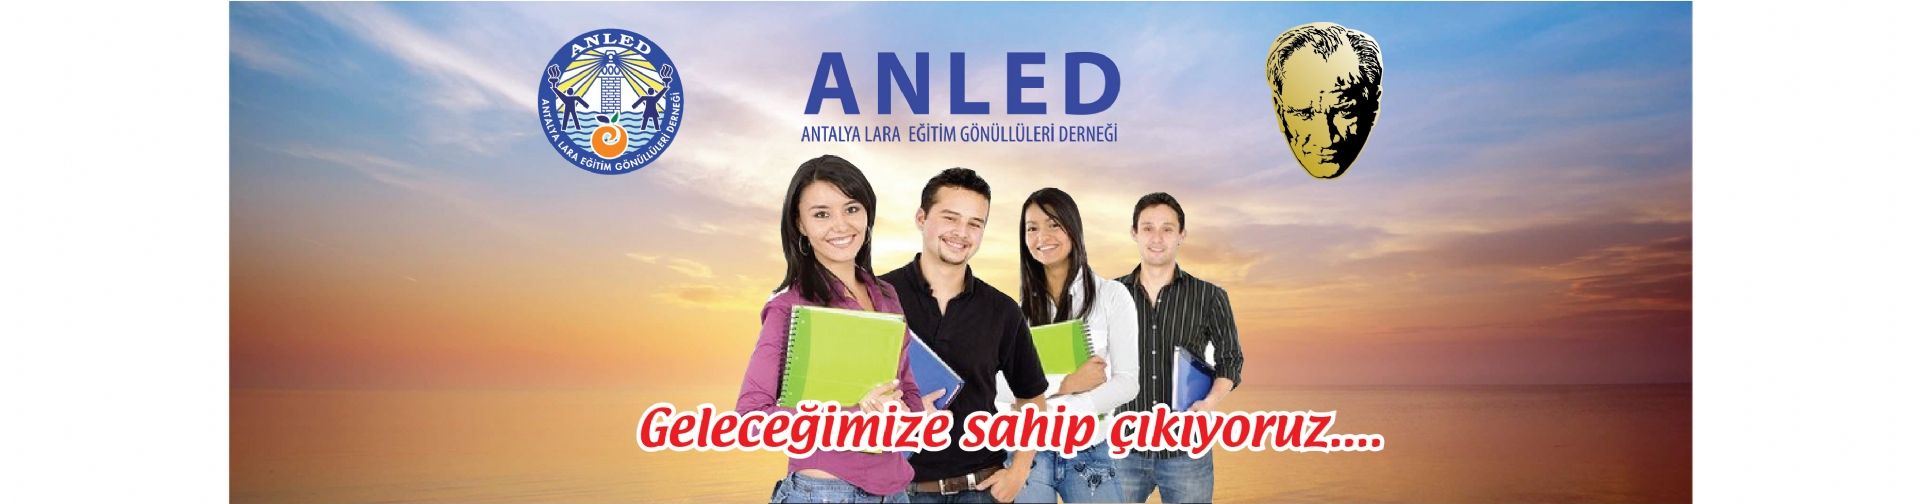 ANLED - Antalya Lara Eğitim Gönüllüleri Derneği